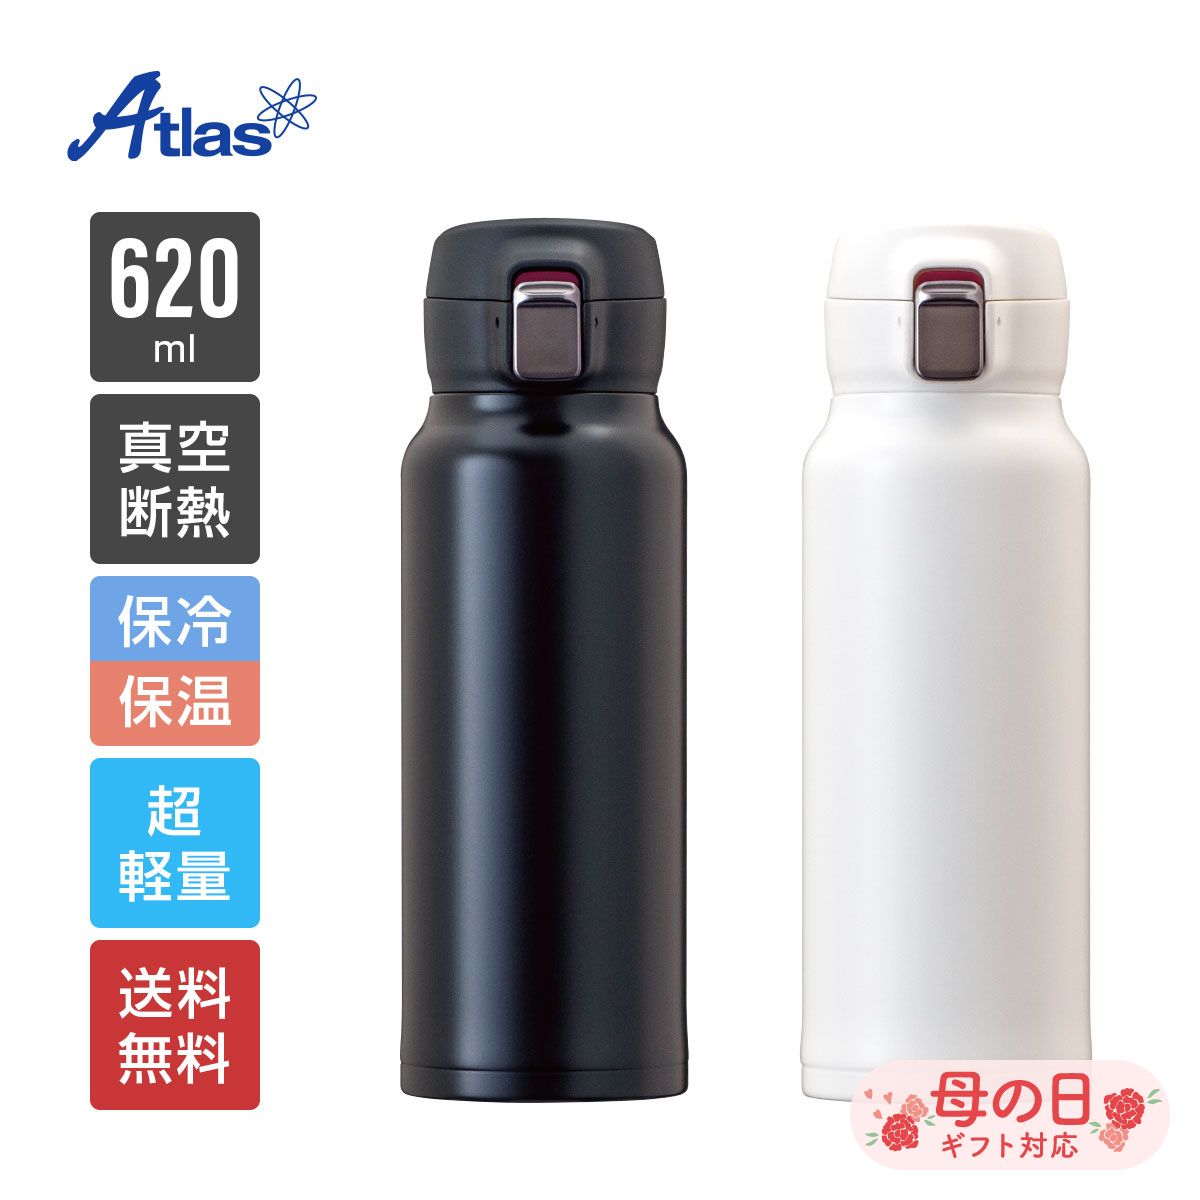 アトラス 水筒 620ml 保冷 保温 真空断熱 分解できる超軽量ワンタッチボトル ブラック ホワイト Airlist（エアリスト） ARNW-600